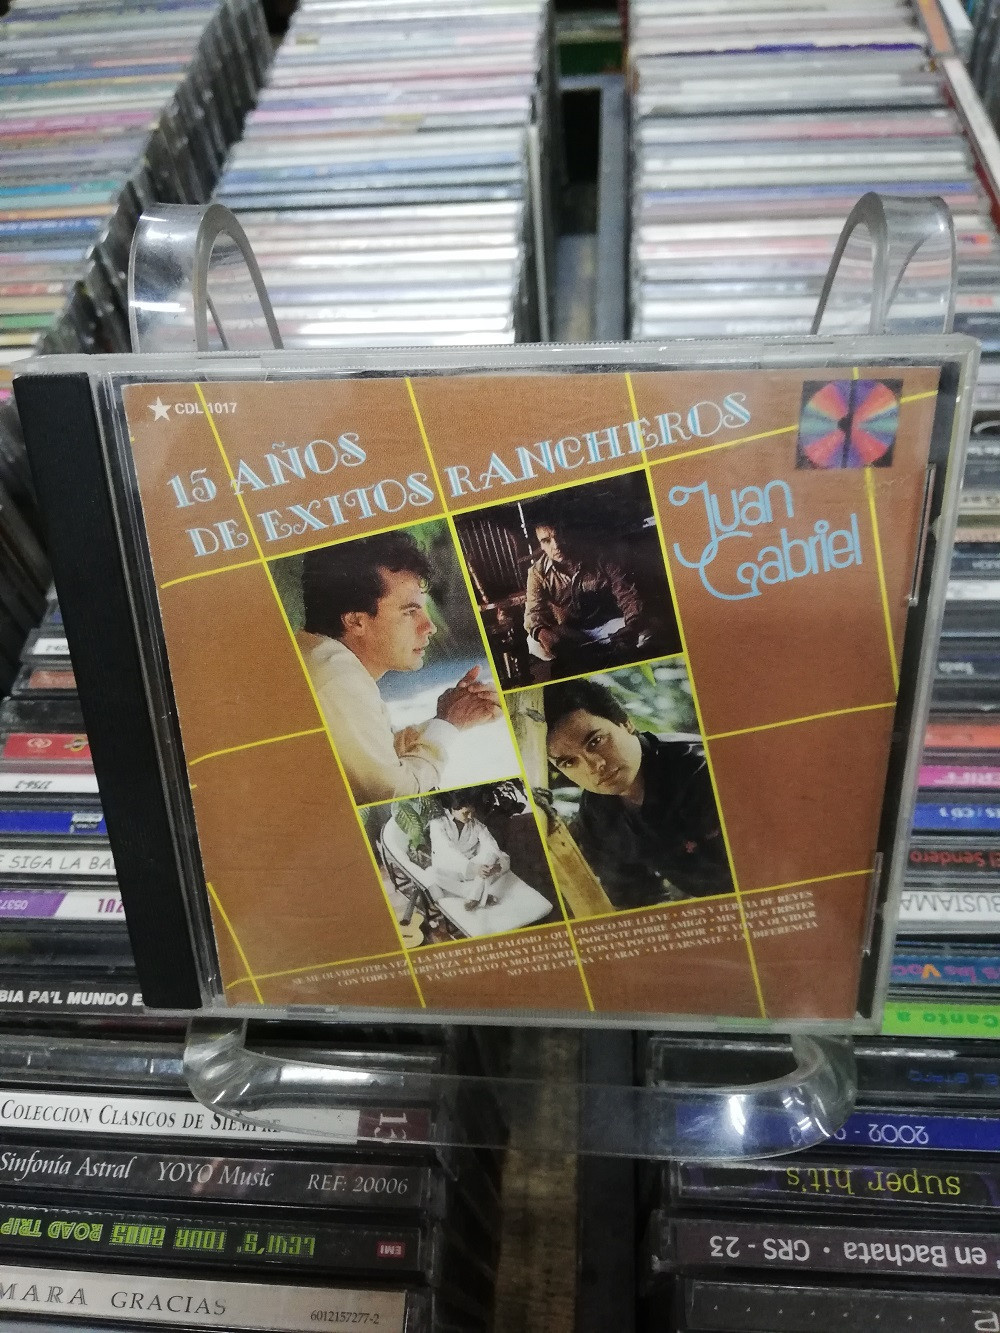 Imagen CD JUAN GABRIEL - 15 AÑOS DE EXITOS RANCHEROS